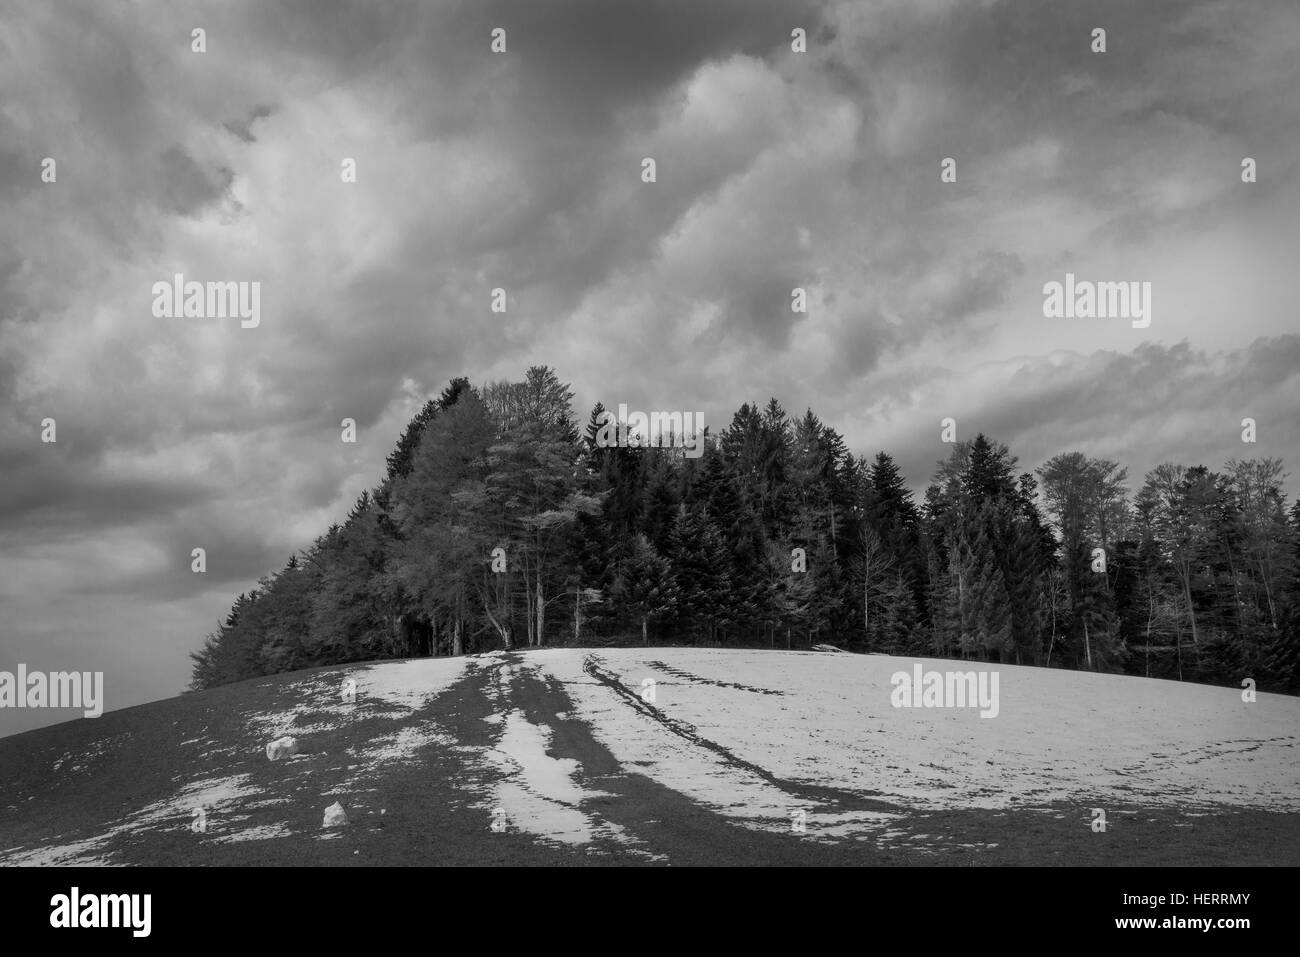 Photographie en noir et blanc des nuages sur la neige avec des sapins en premier plan. Banque D'Images